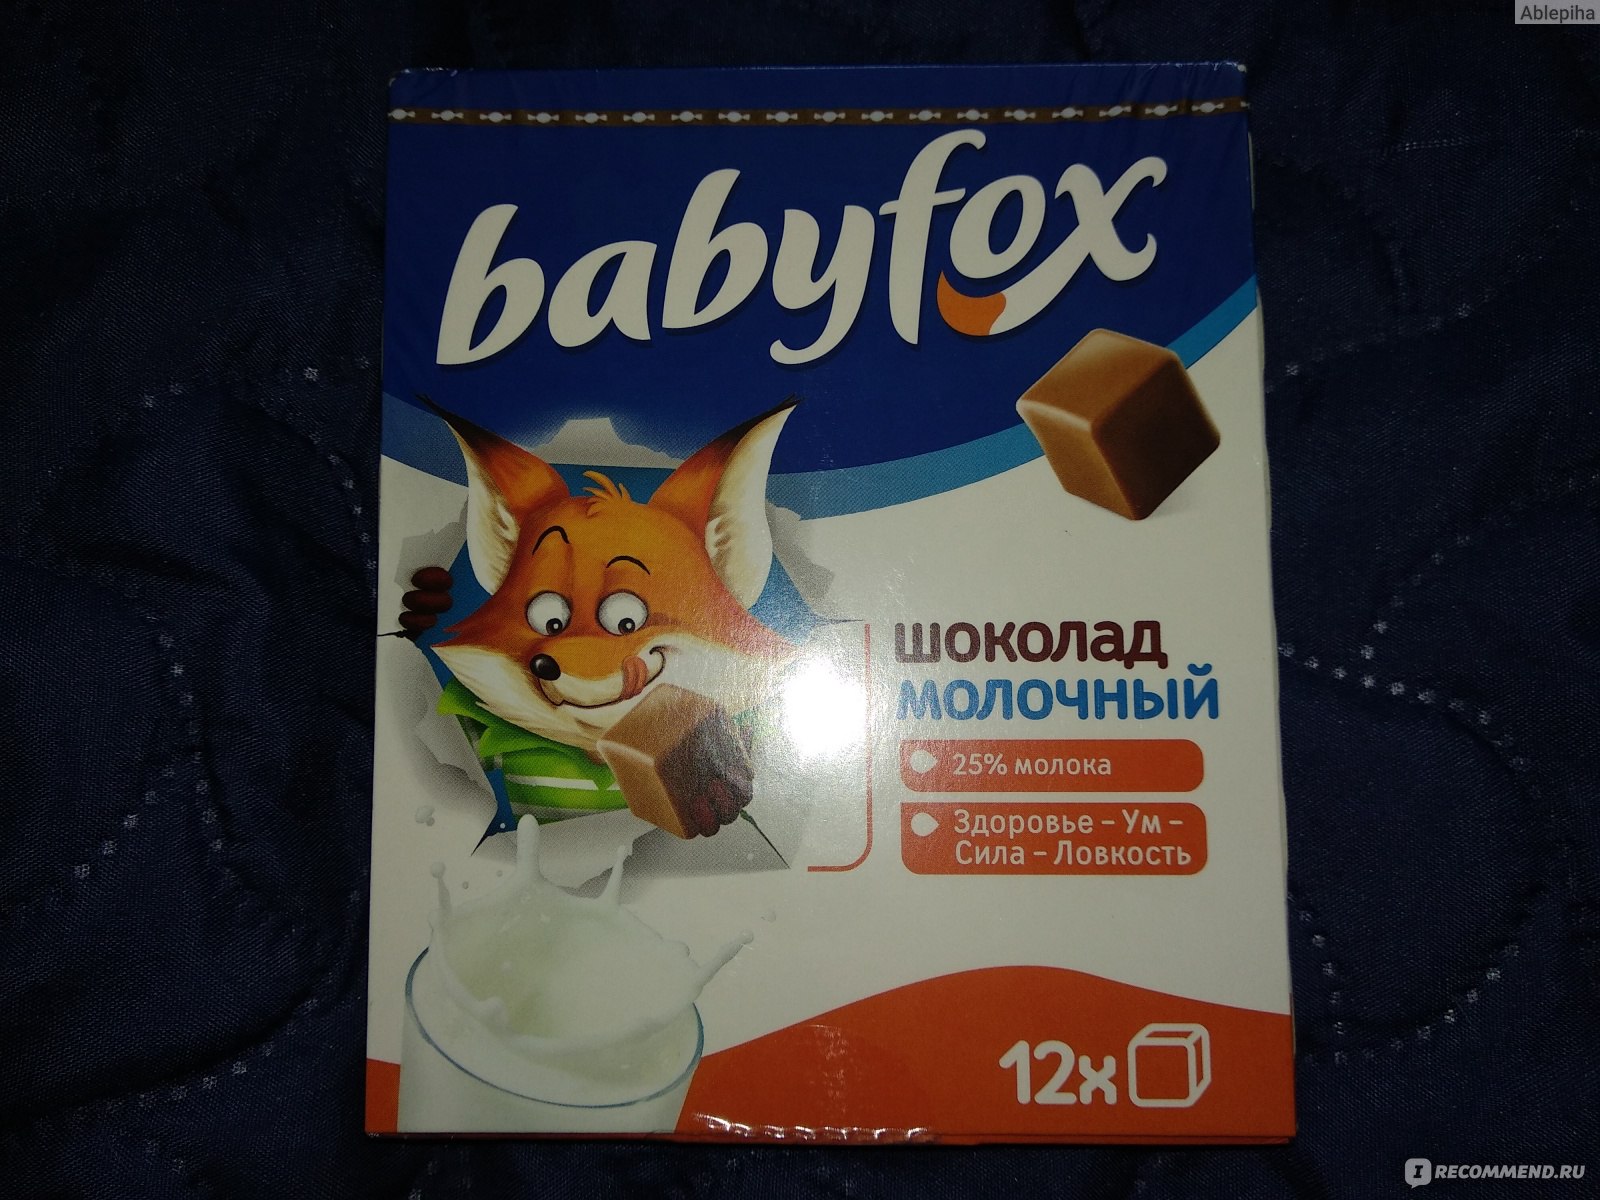 Где Можно Купить Шоколад Baby Fox